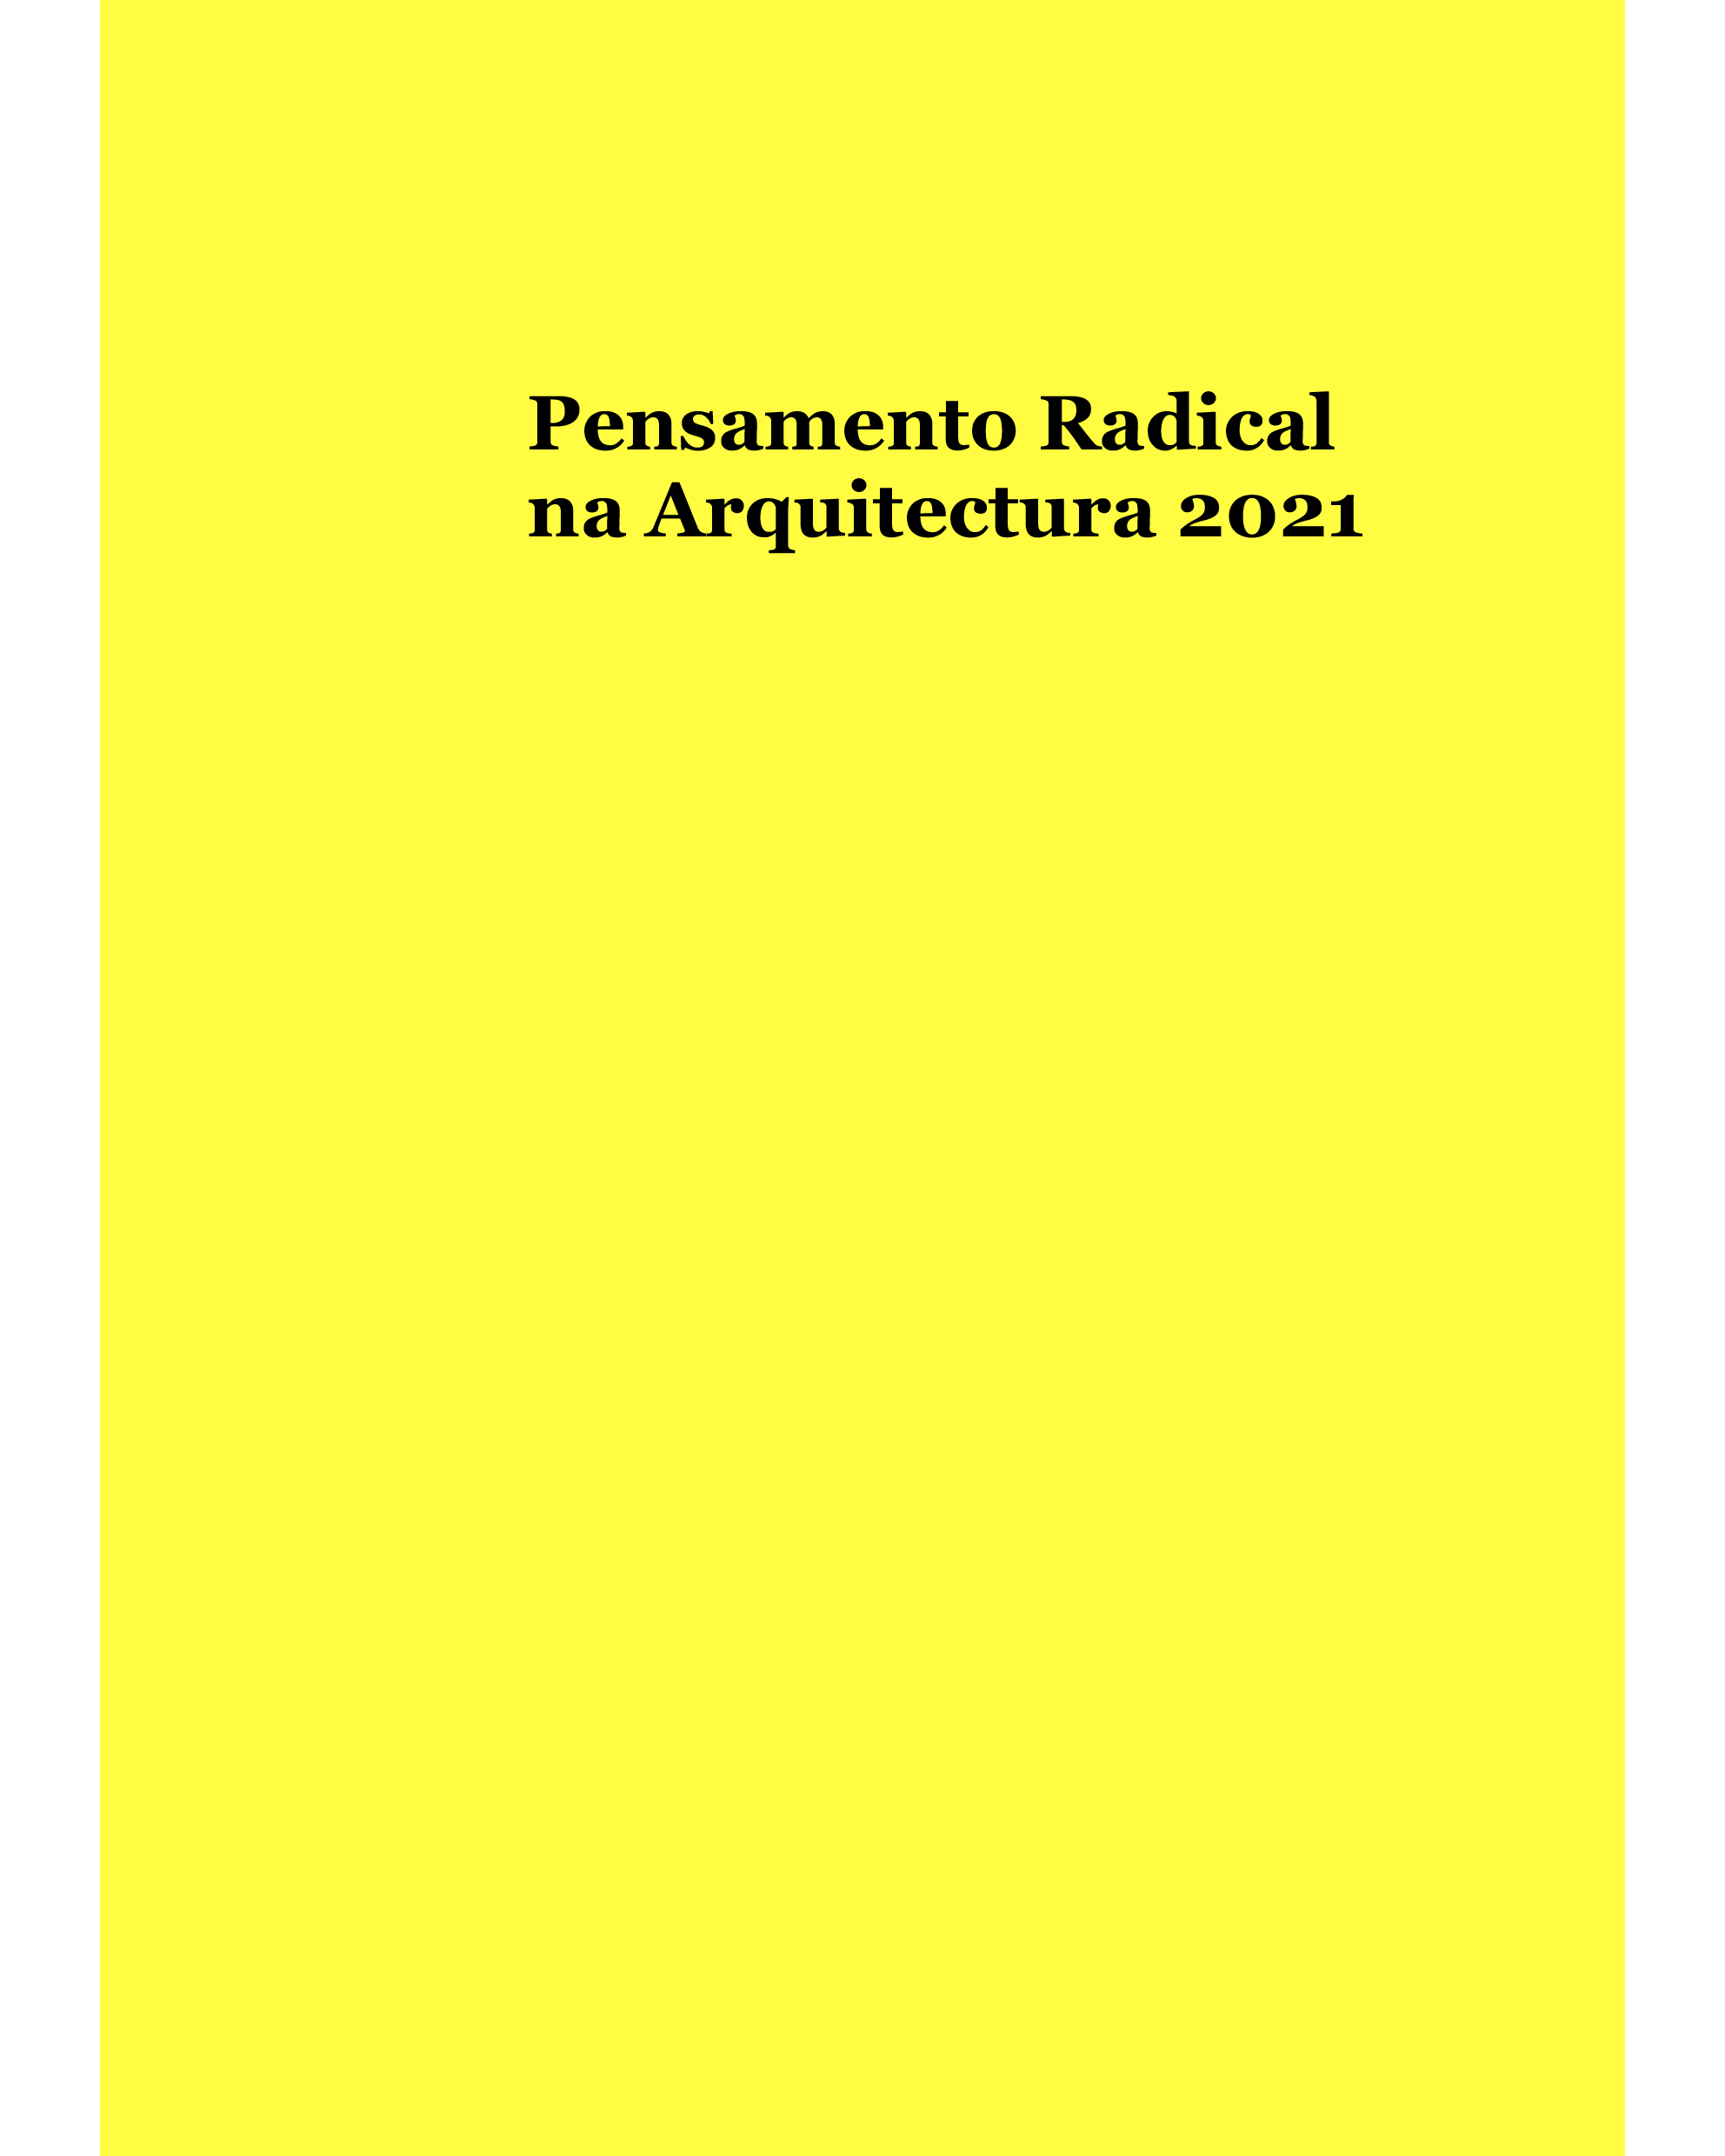 2021 - Pensamento radical na arquitectura 2021 image